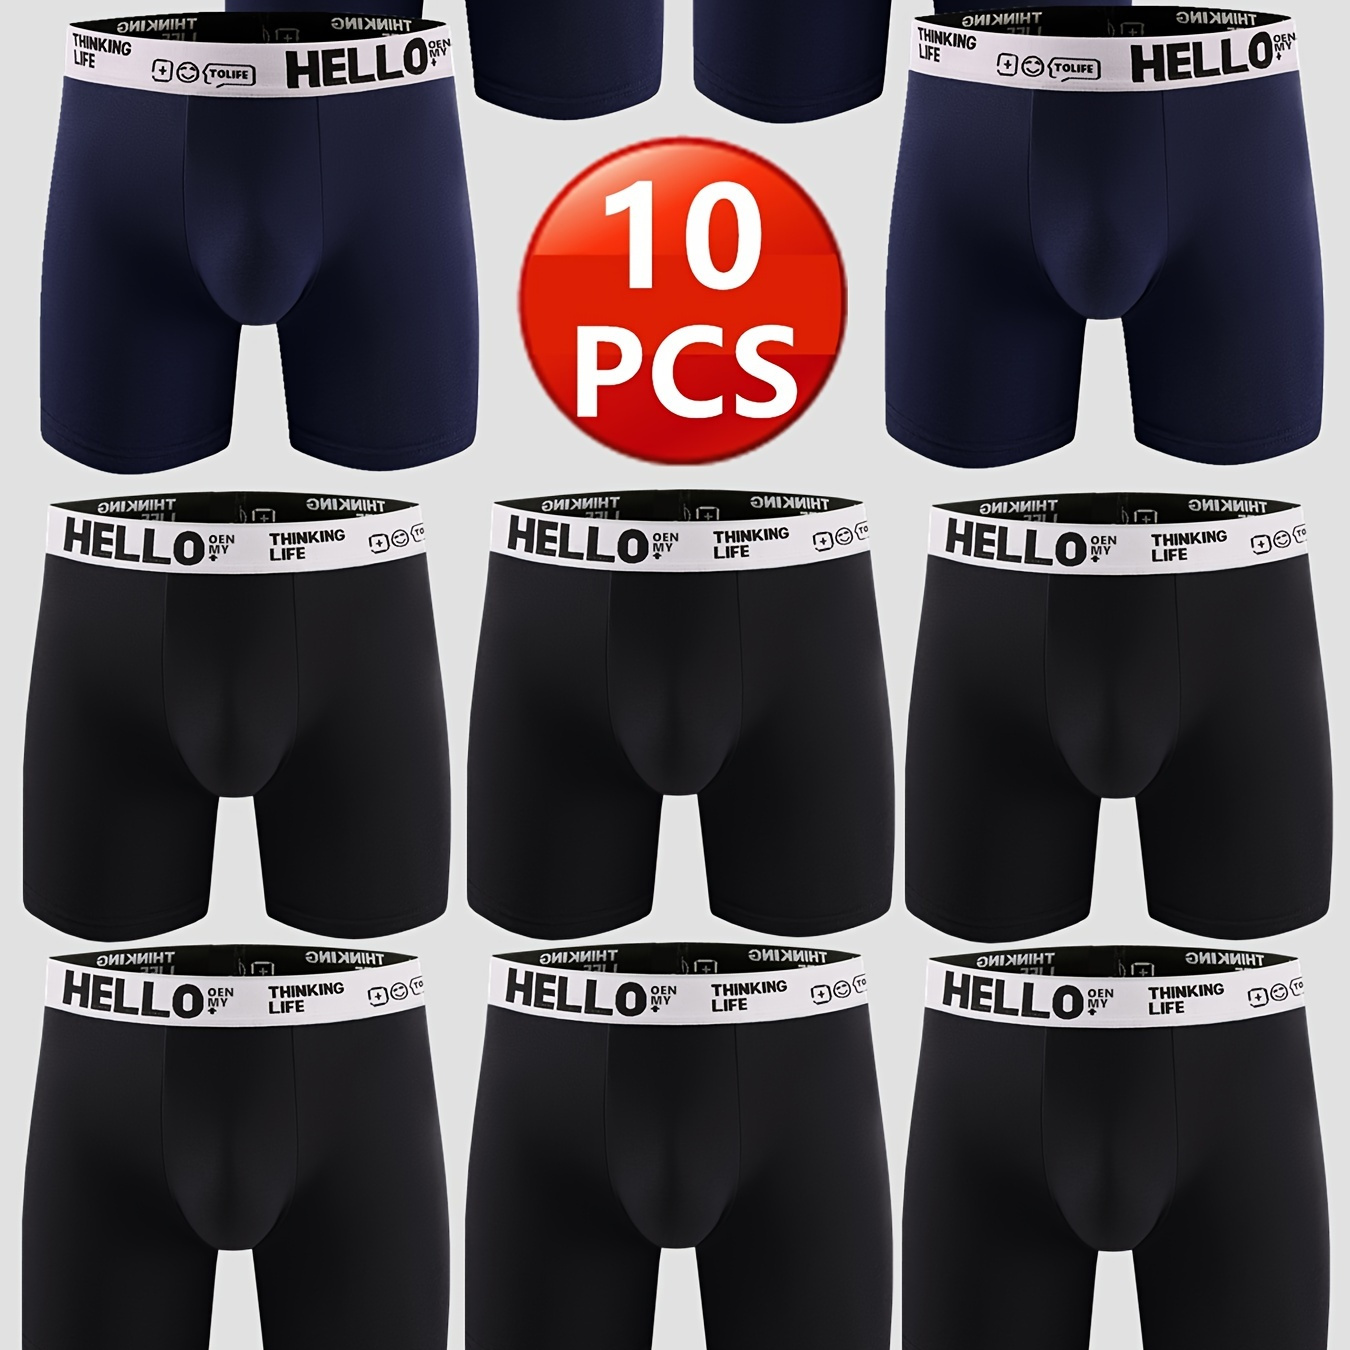 

10pcs Men's Cotton Breathable Comfortable Soft Stretchy Plain Color Boxer Briefs Underwear Set Ideal Gifts For Him